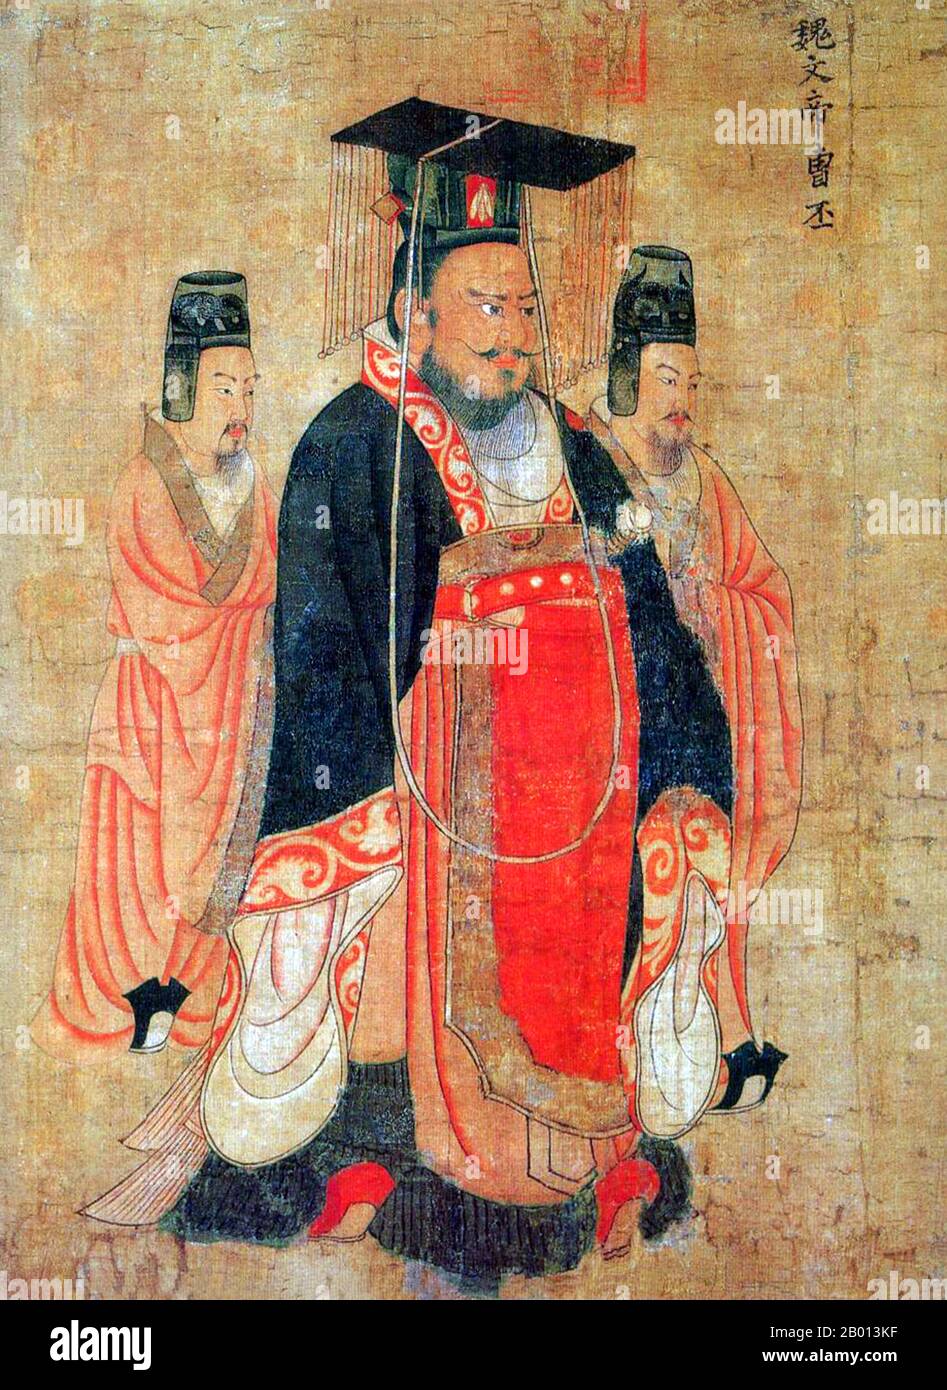 China: Kaiser Wen von Wei (187–226). Handscroll-Gemälde aus der „Schriftrolle der dreizehn Kaiser“ des Hofmalers Yan Liben aus der Tang-Dynastie (600-673), 7. Jahrhundert. Cao Pi (187. – 29. Juni 226), formell als Kaiser Wen von Wei bekannt, war der erste Kaiser des Staates Cao Wei während der Zeit der drei Königreiche der chinesischen Geschichte. Geboren im Landkreis Qiao, Pei Commandery (heute Bozhou, Anhui), war er der zweite Sohn des späten Han-Dynastie-Kriegsfürsten Cao Cao. Im Jahr 220 zwang Cao Pi Kaiser Xian, den letzten Herrscher der Han Dynastie, abzudanken und sich selbst zum Kaiser von Wei zu ernannten. Stockfoto